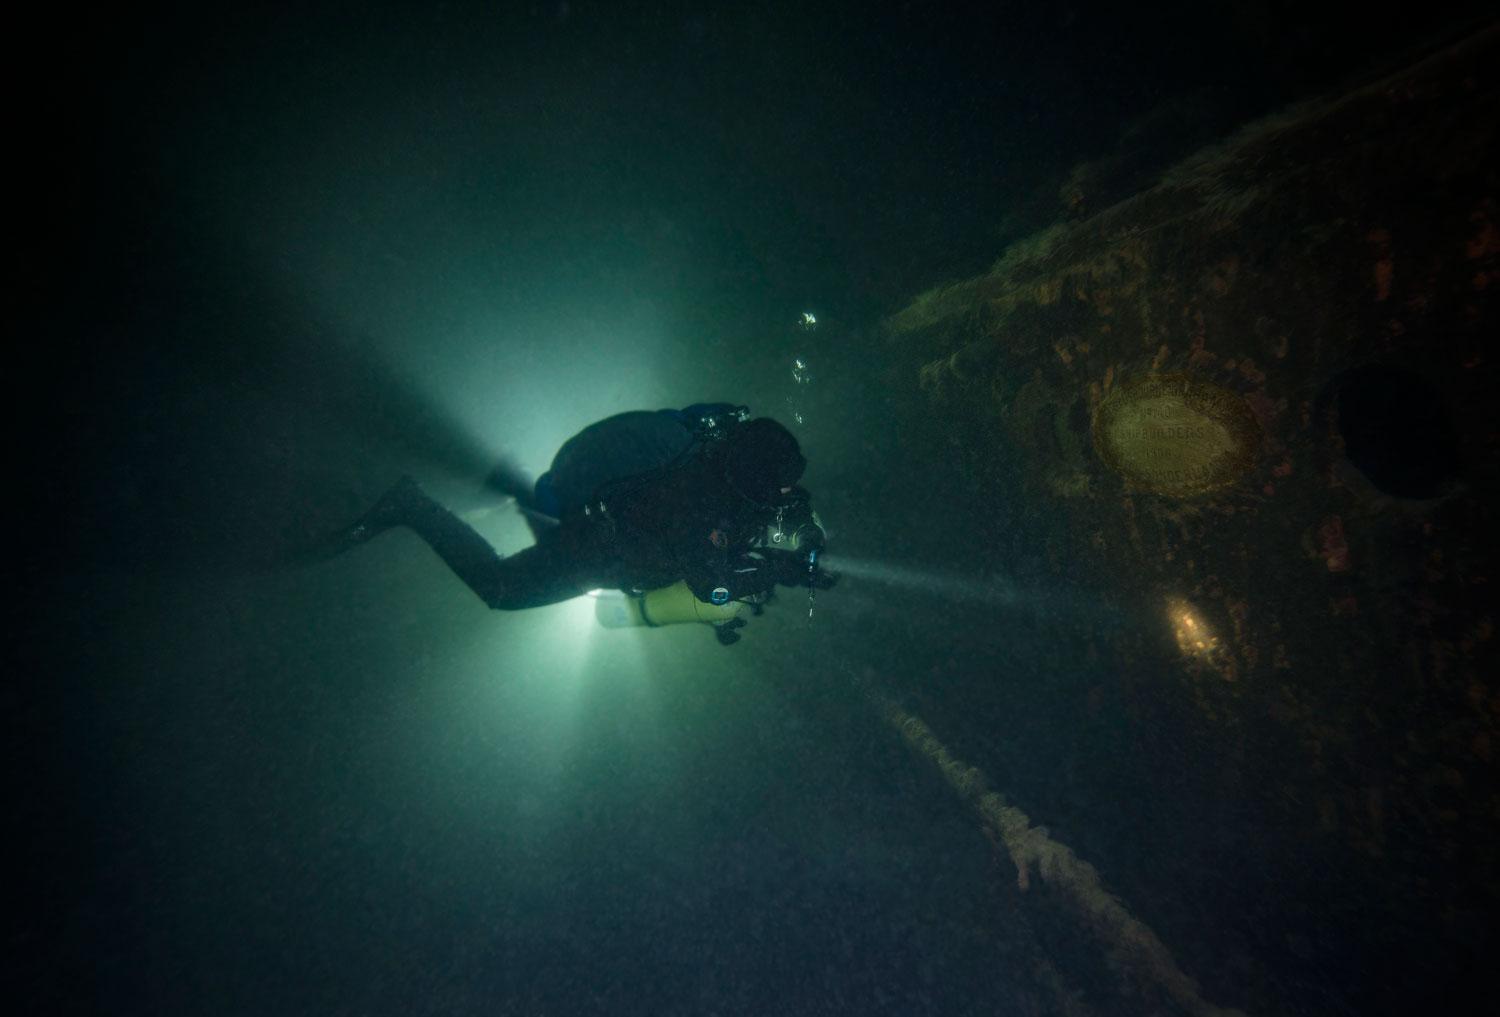 Sju meter ovanför livbåten finns en byggskylt som är välbesökt av tekniska dykare. ”De har troligtvis varit helt omedvetna om vad som dolt sig bara några meter under dem”, säger William Hemberg.